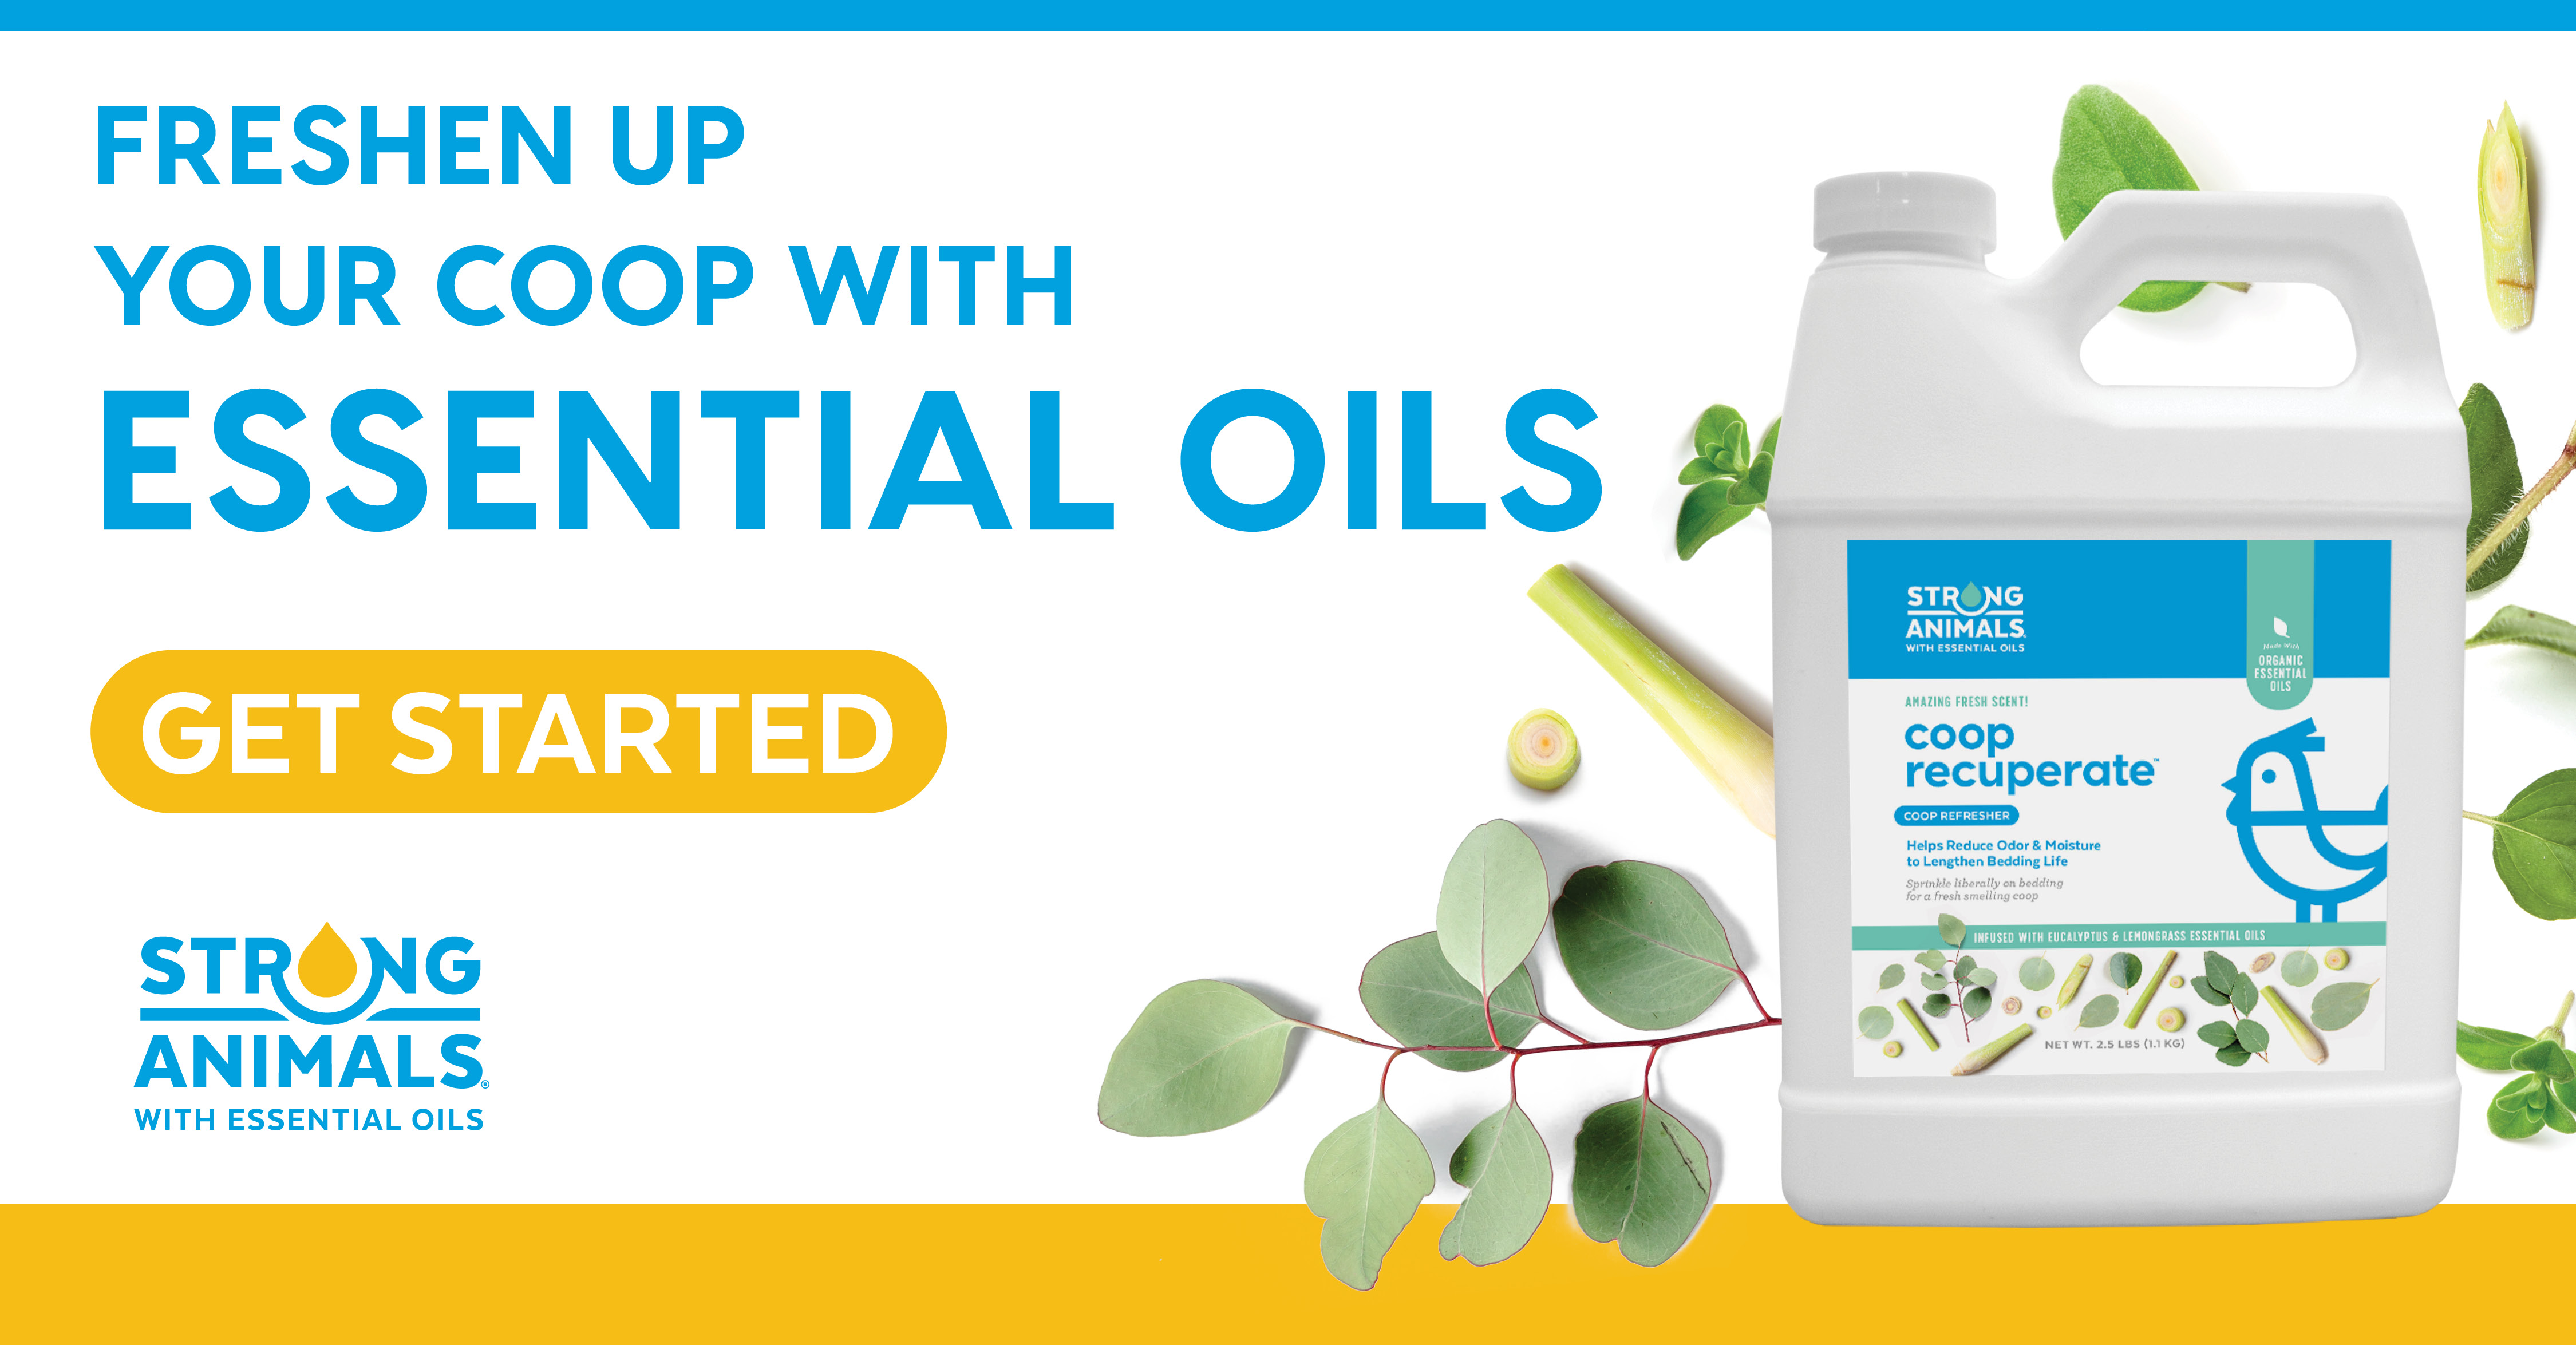 coop recuperate - essential oils